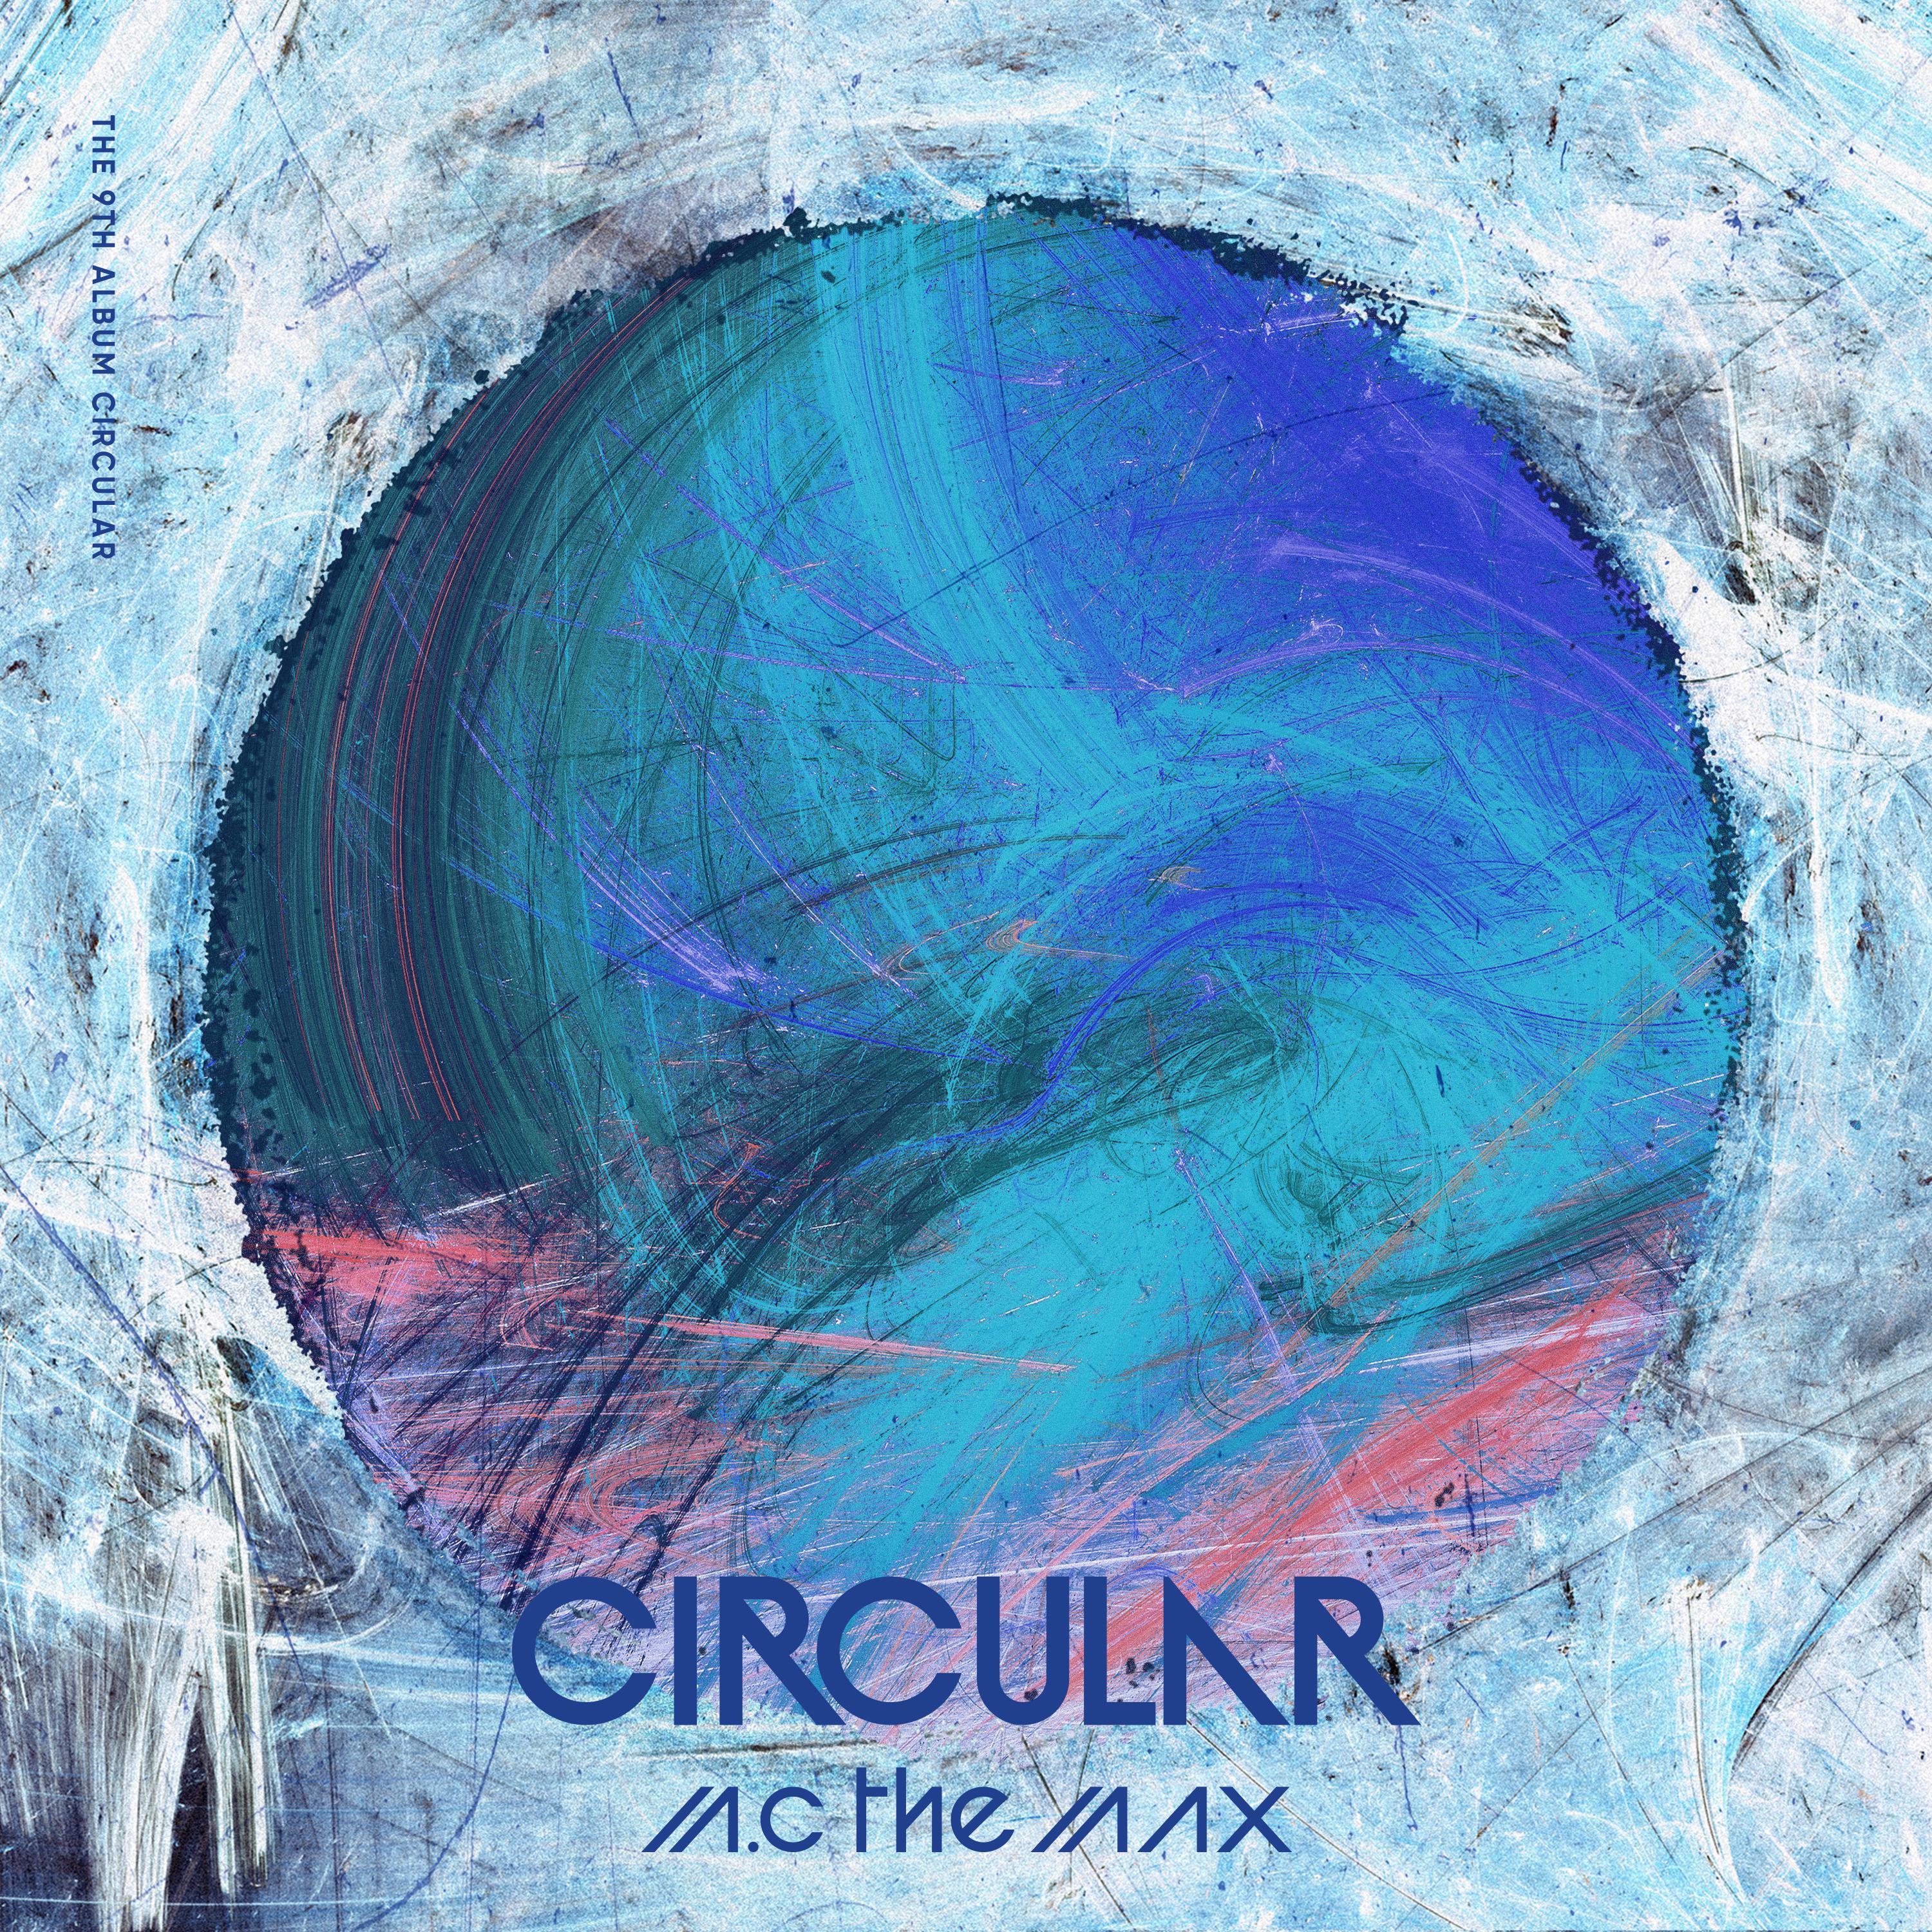 넘쳐흘러歌词 歌手M.C The Max-专辑Circular-单曲《넘쳐흘러》LRC歌词下载